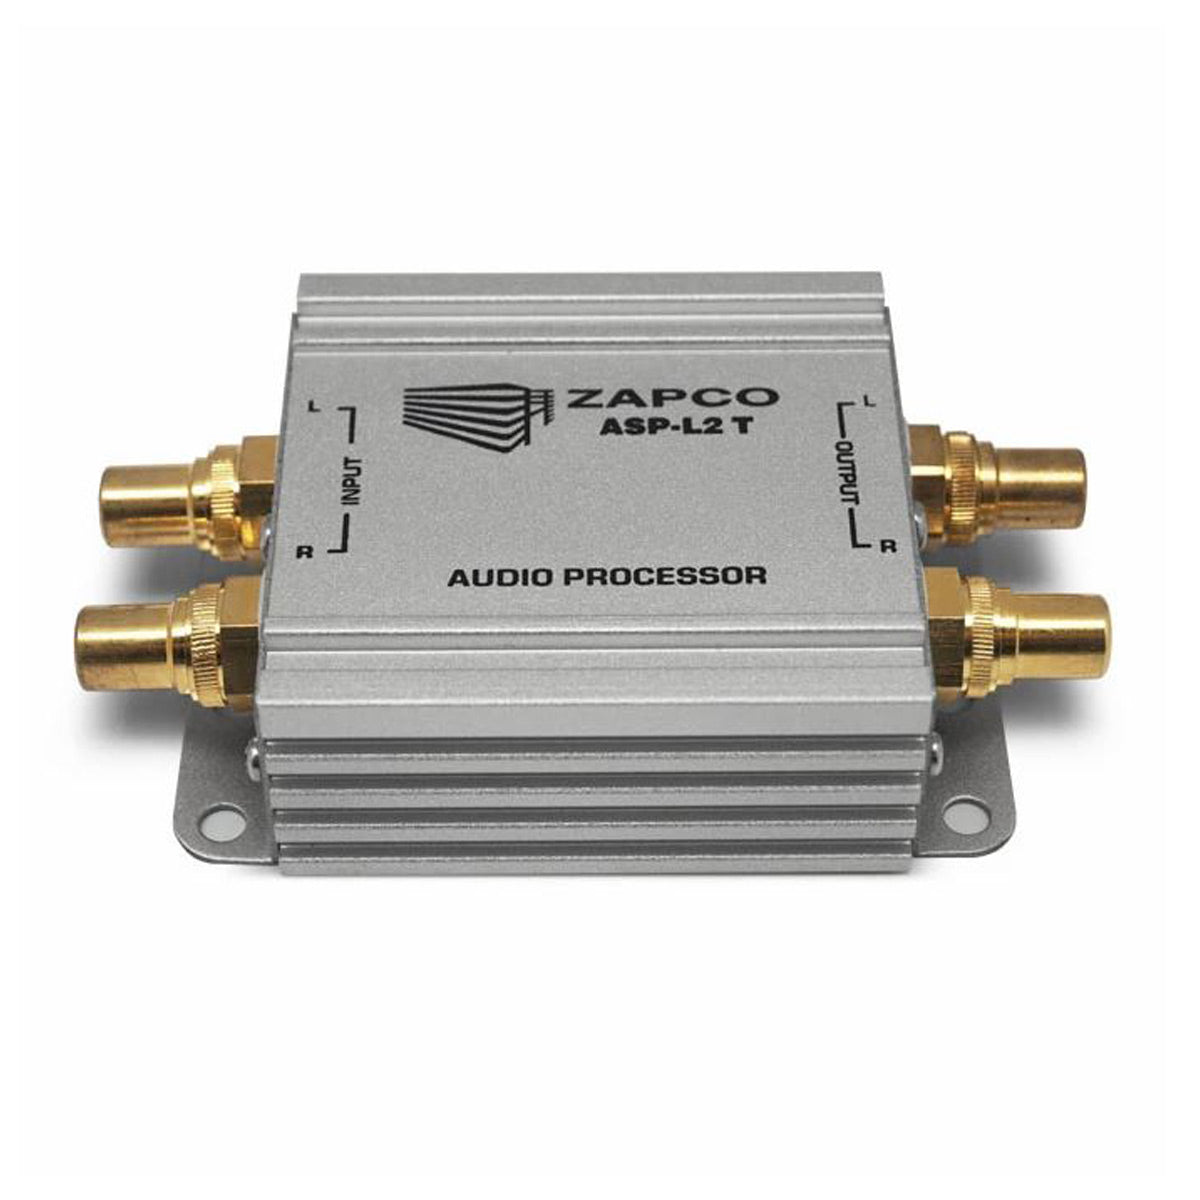 Zapco ASP- L2 T 2-Channel Line Noise Filter